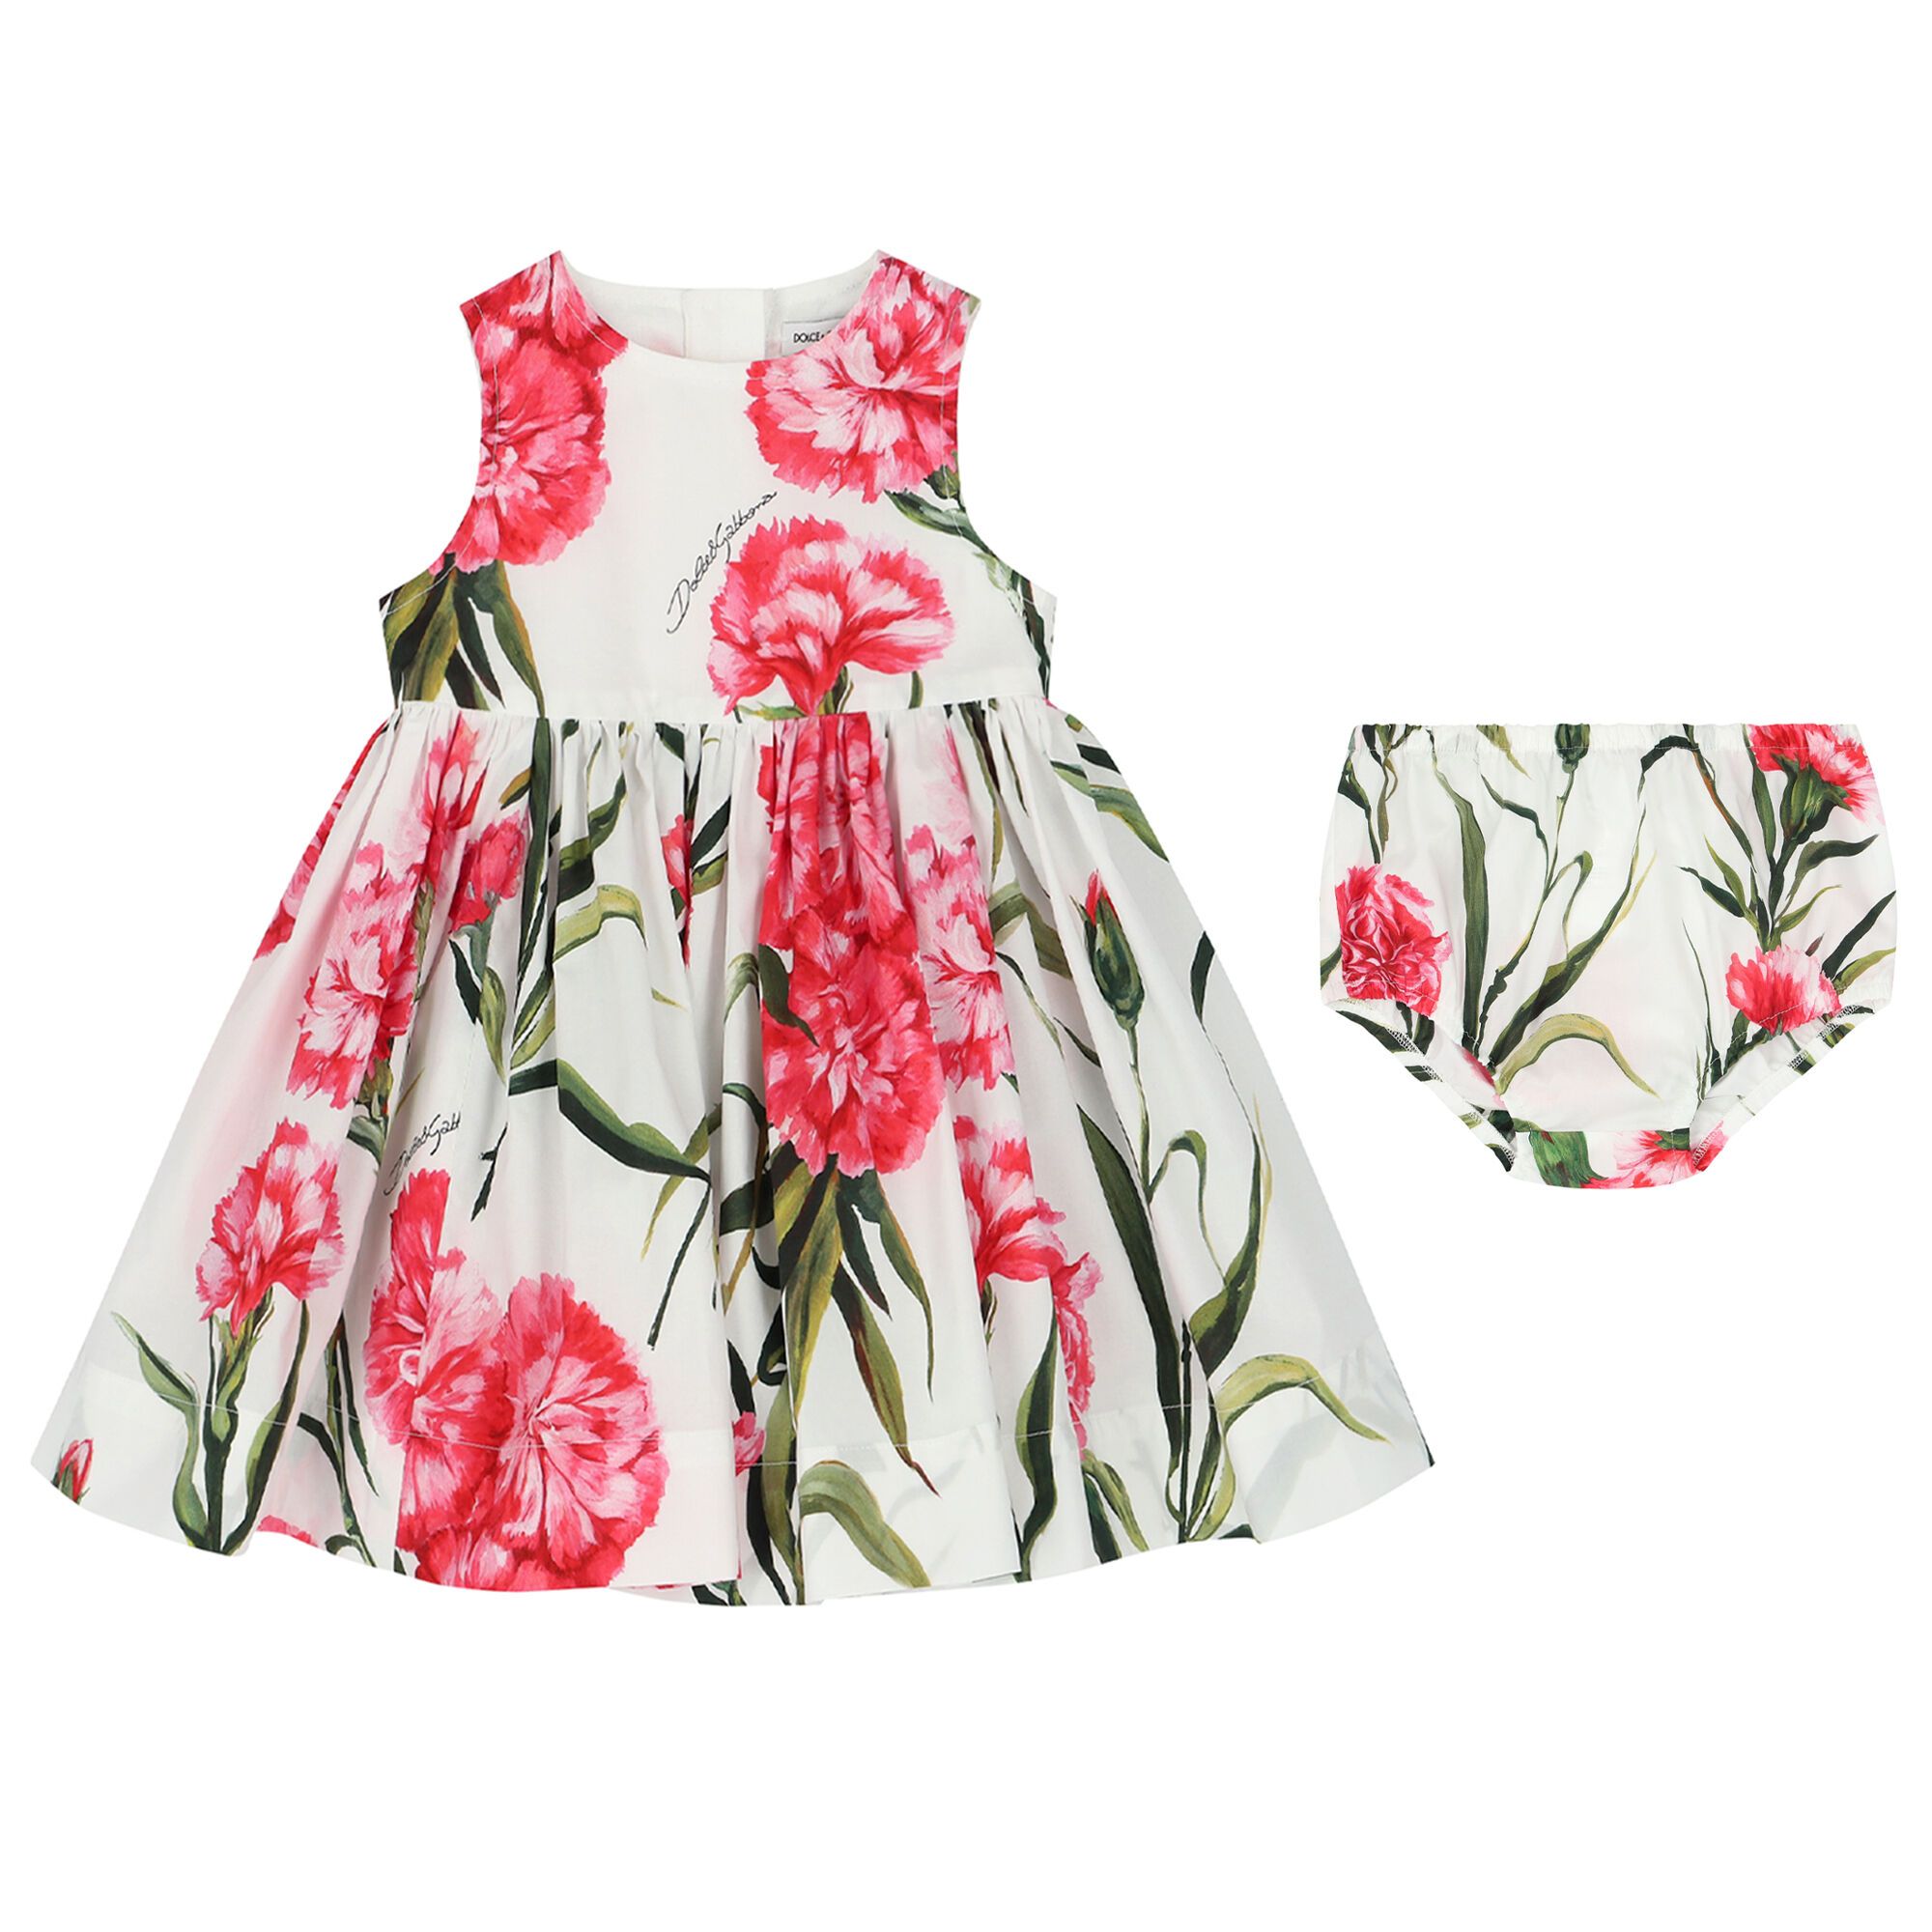 NEW Dolce & Gabbana Kids Girls Short Sleeve Sequin Dress Bright